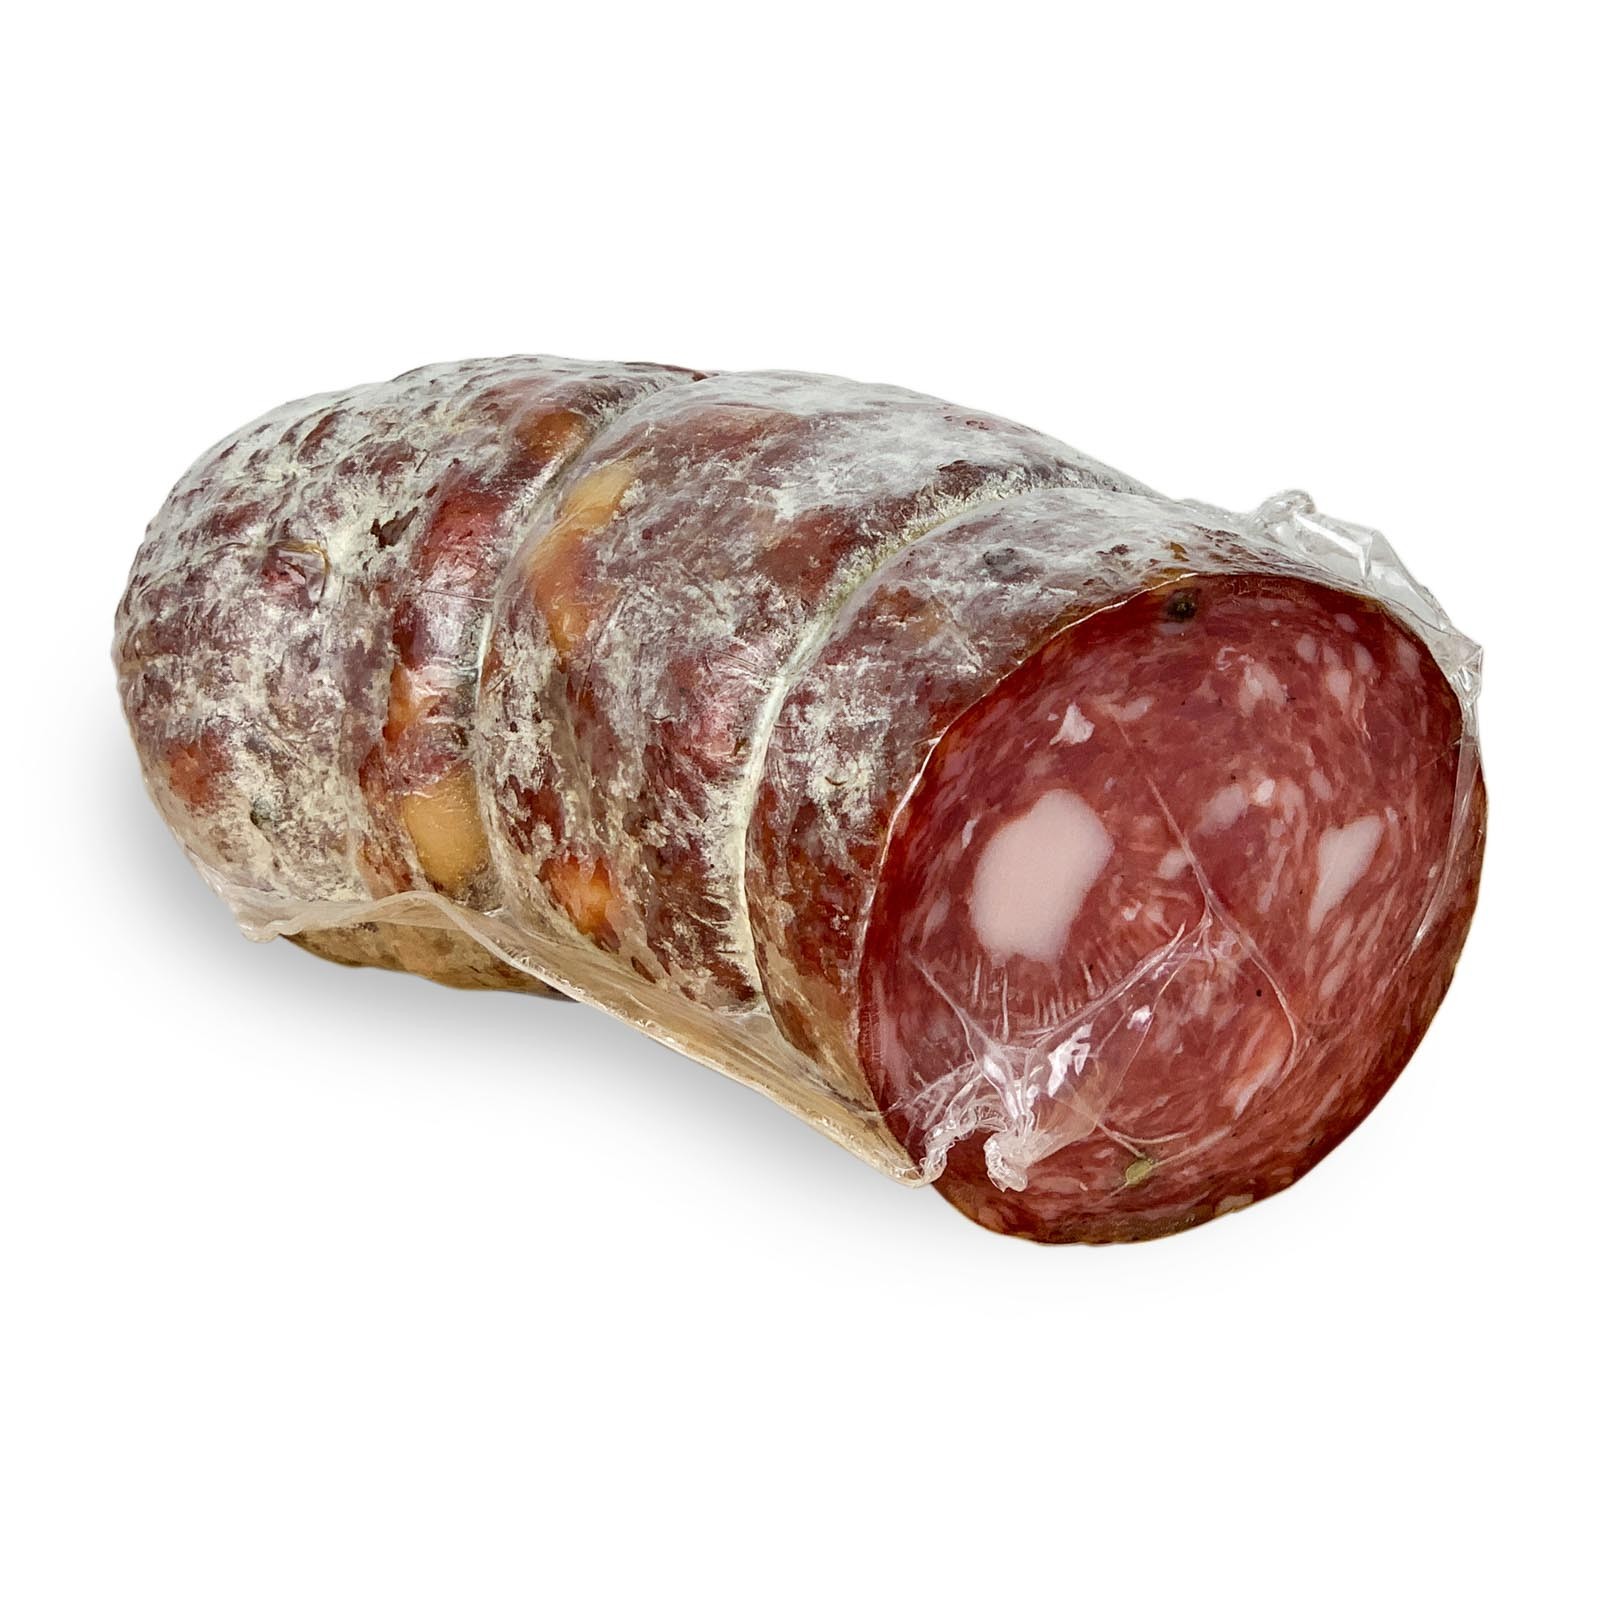 Große Toskanische Salami, ein Klassiker der Tradition. Diese Version von Toskanische Salami hat ein Nettogewicht von ca. 1 kg, ist Vakuumverpackten und zeichnet sich durch eine große Scheibe von etwa 10 Zentimetern Durchmesser aus.